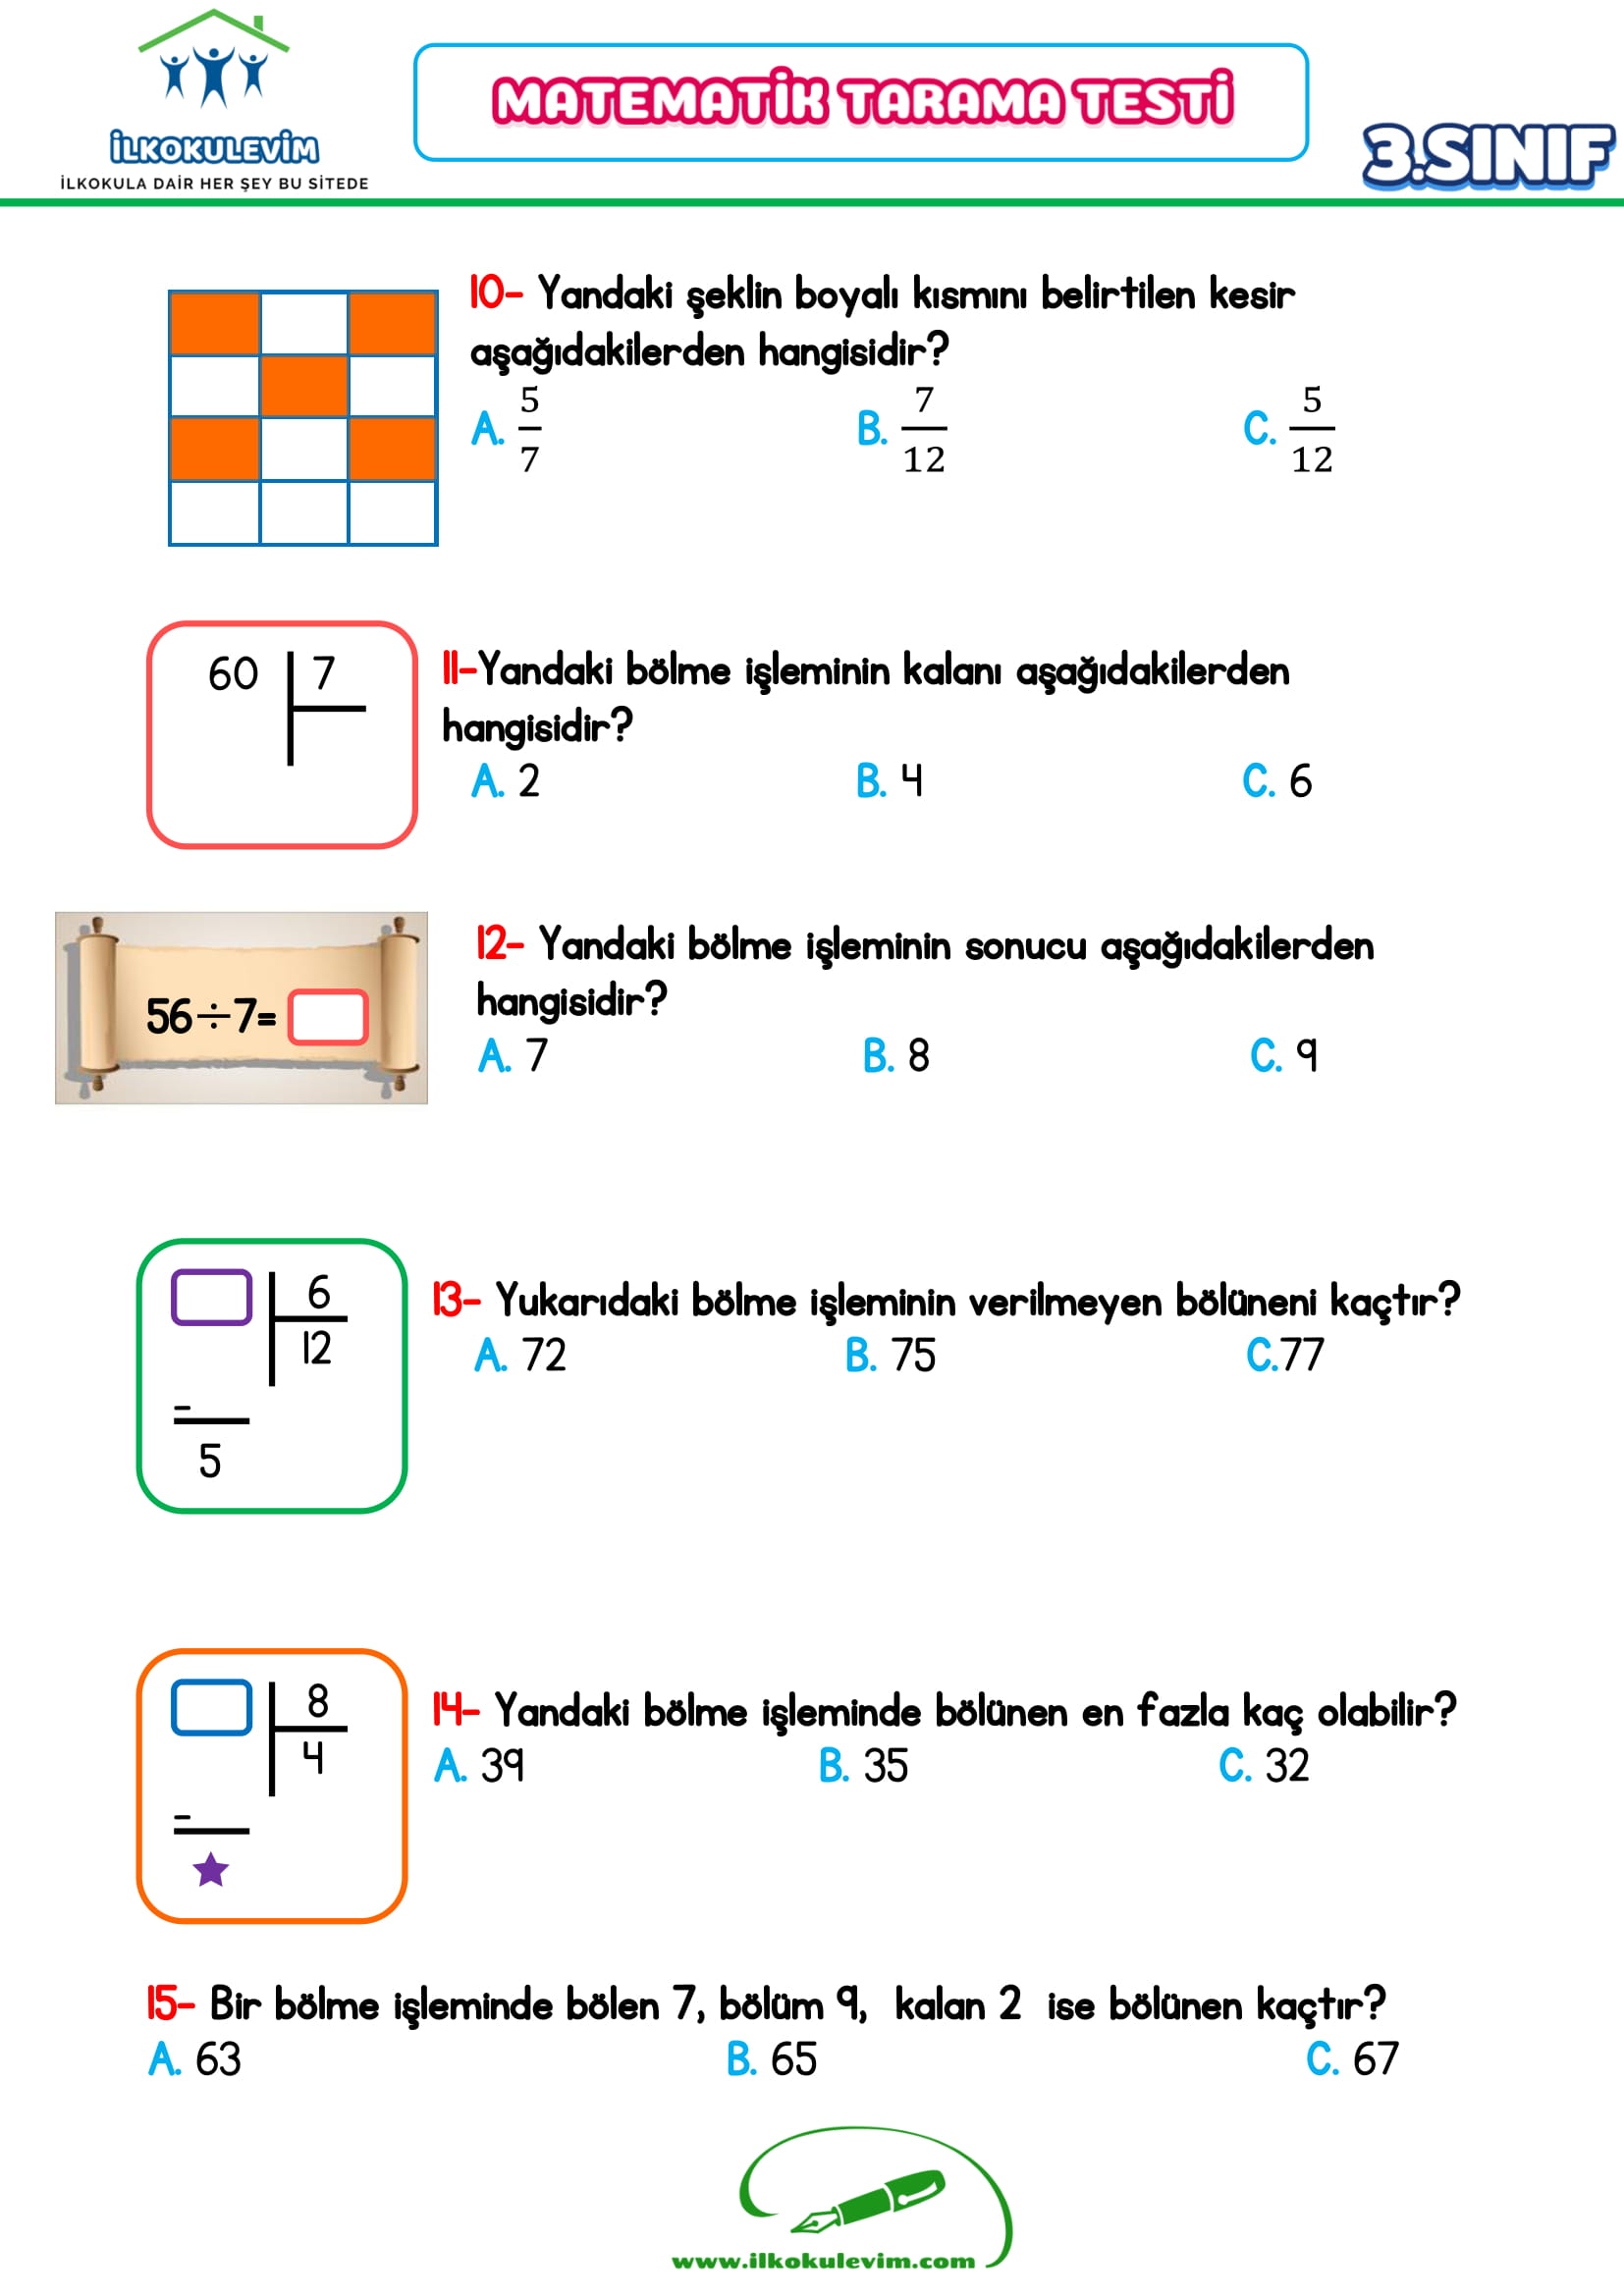 3.Sınıf Matematik Tarama Testi (27 Soru-Cevap Anahtarlı)